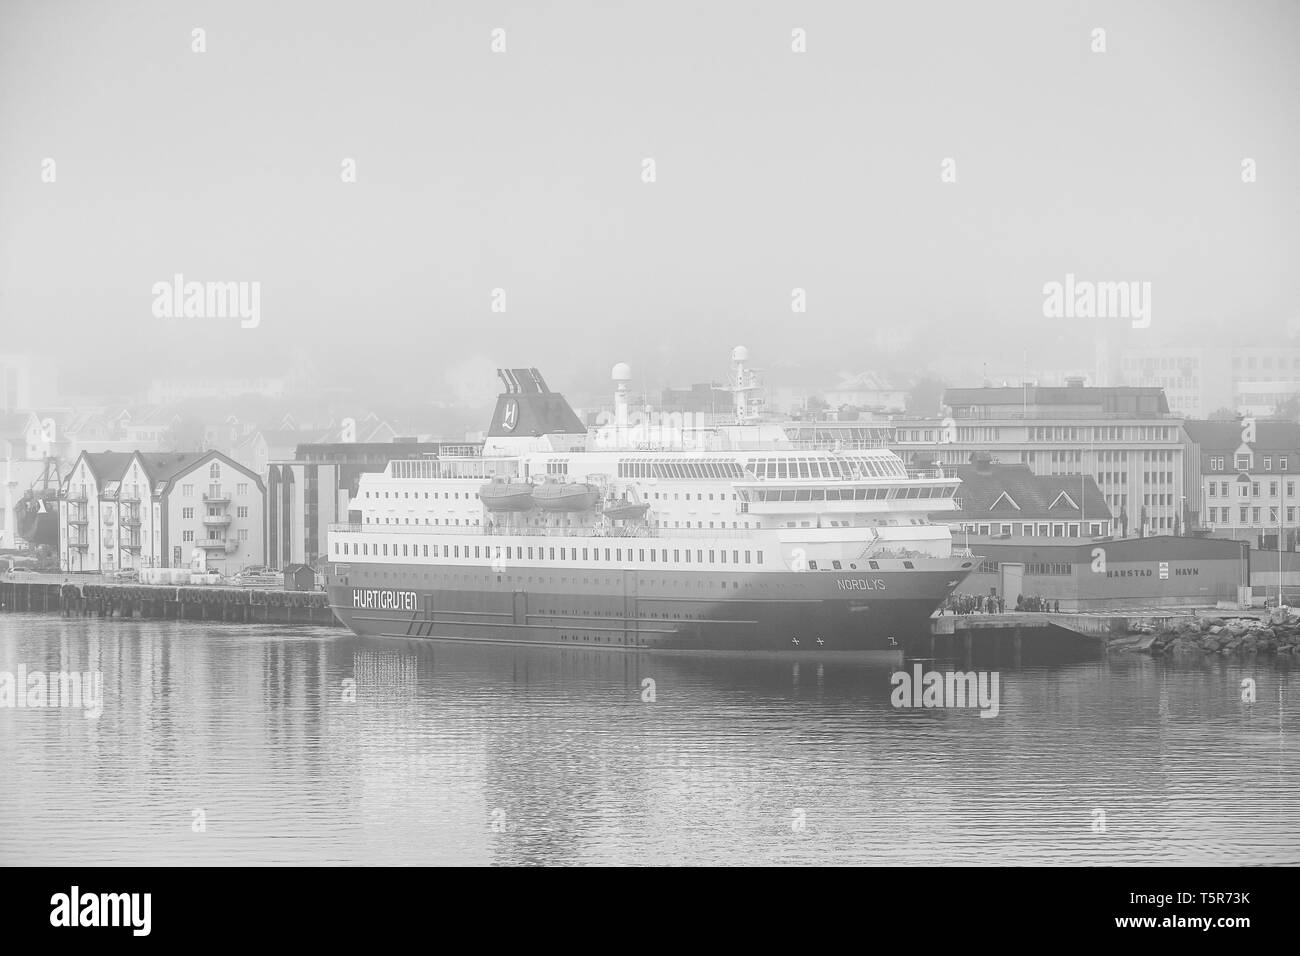 Photo en noir et blanc du navire Hurtigruten, MS NORDLYS, amarré à Harstad, dans un épais brouillard tôt le matin. Le comté de Troms, Norvège. Banque D'Images